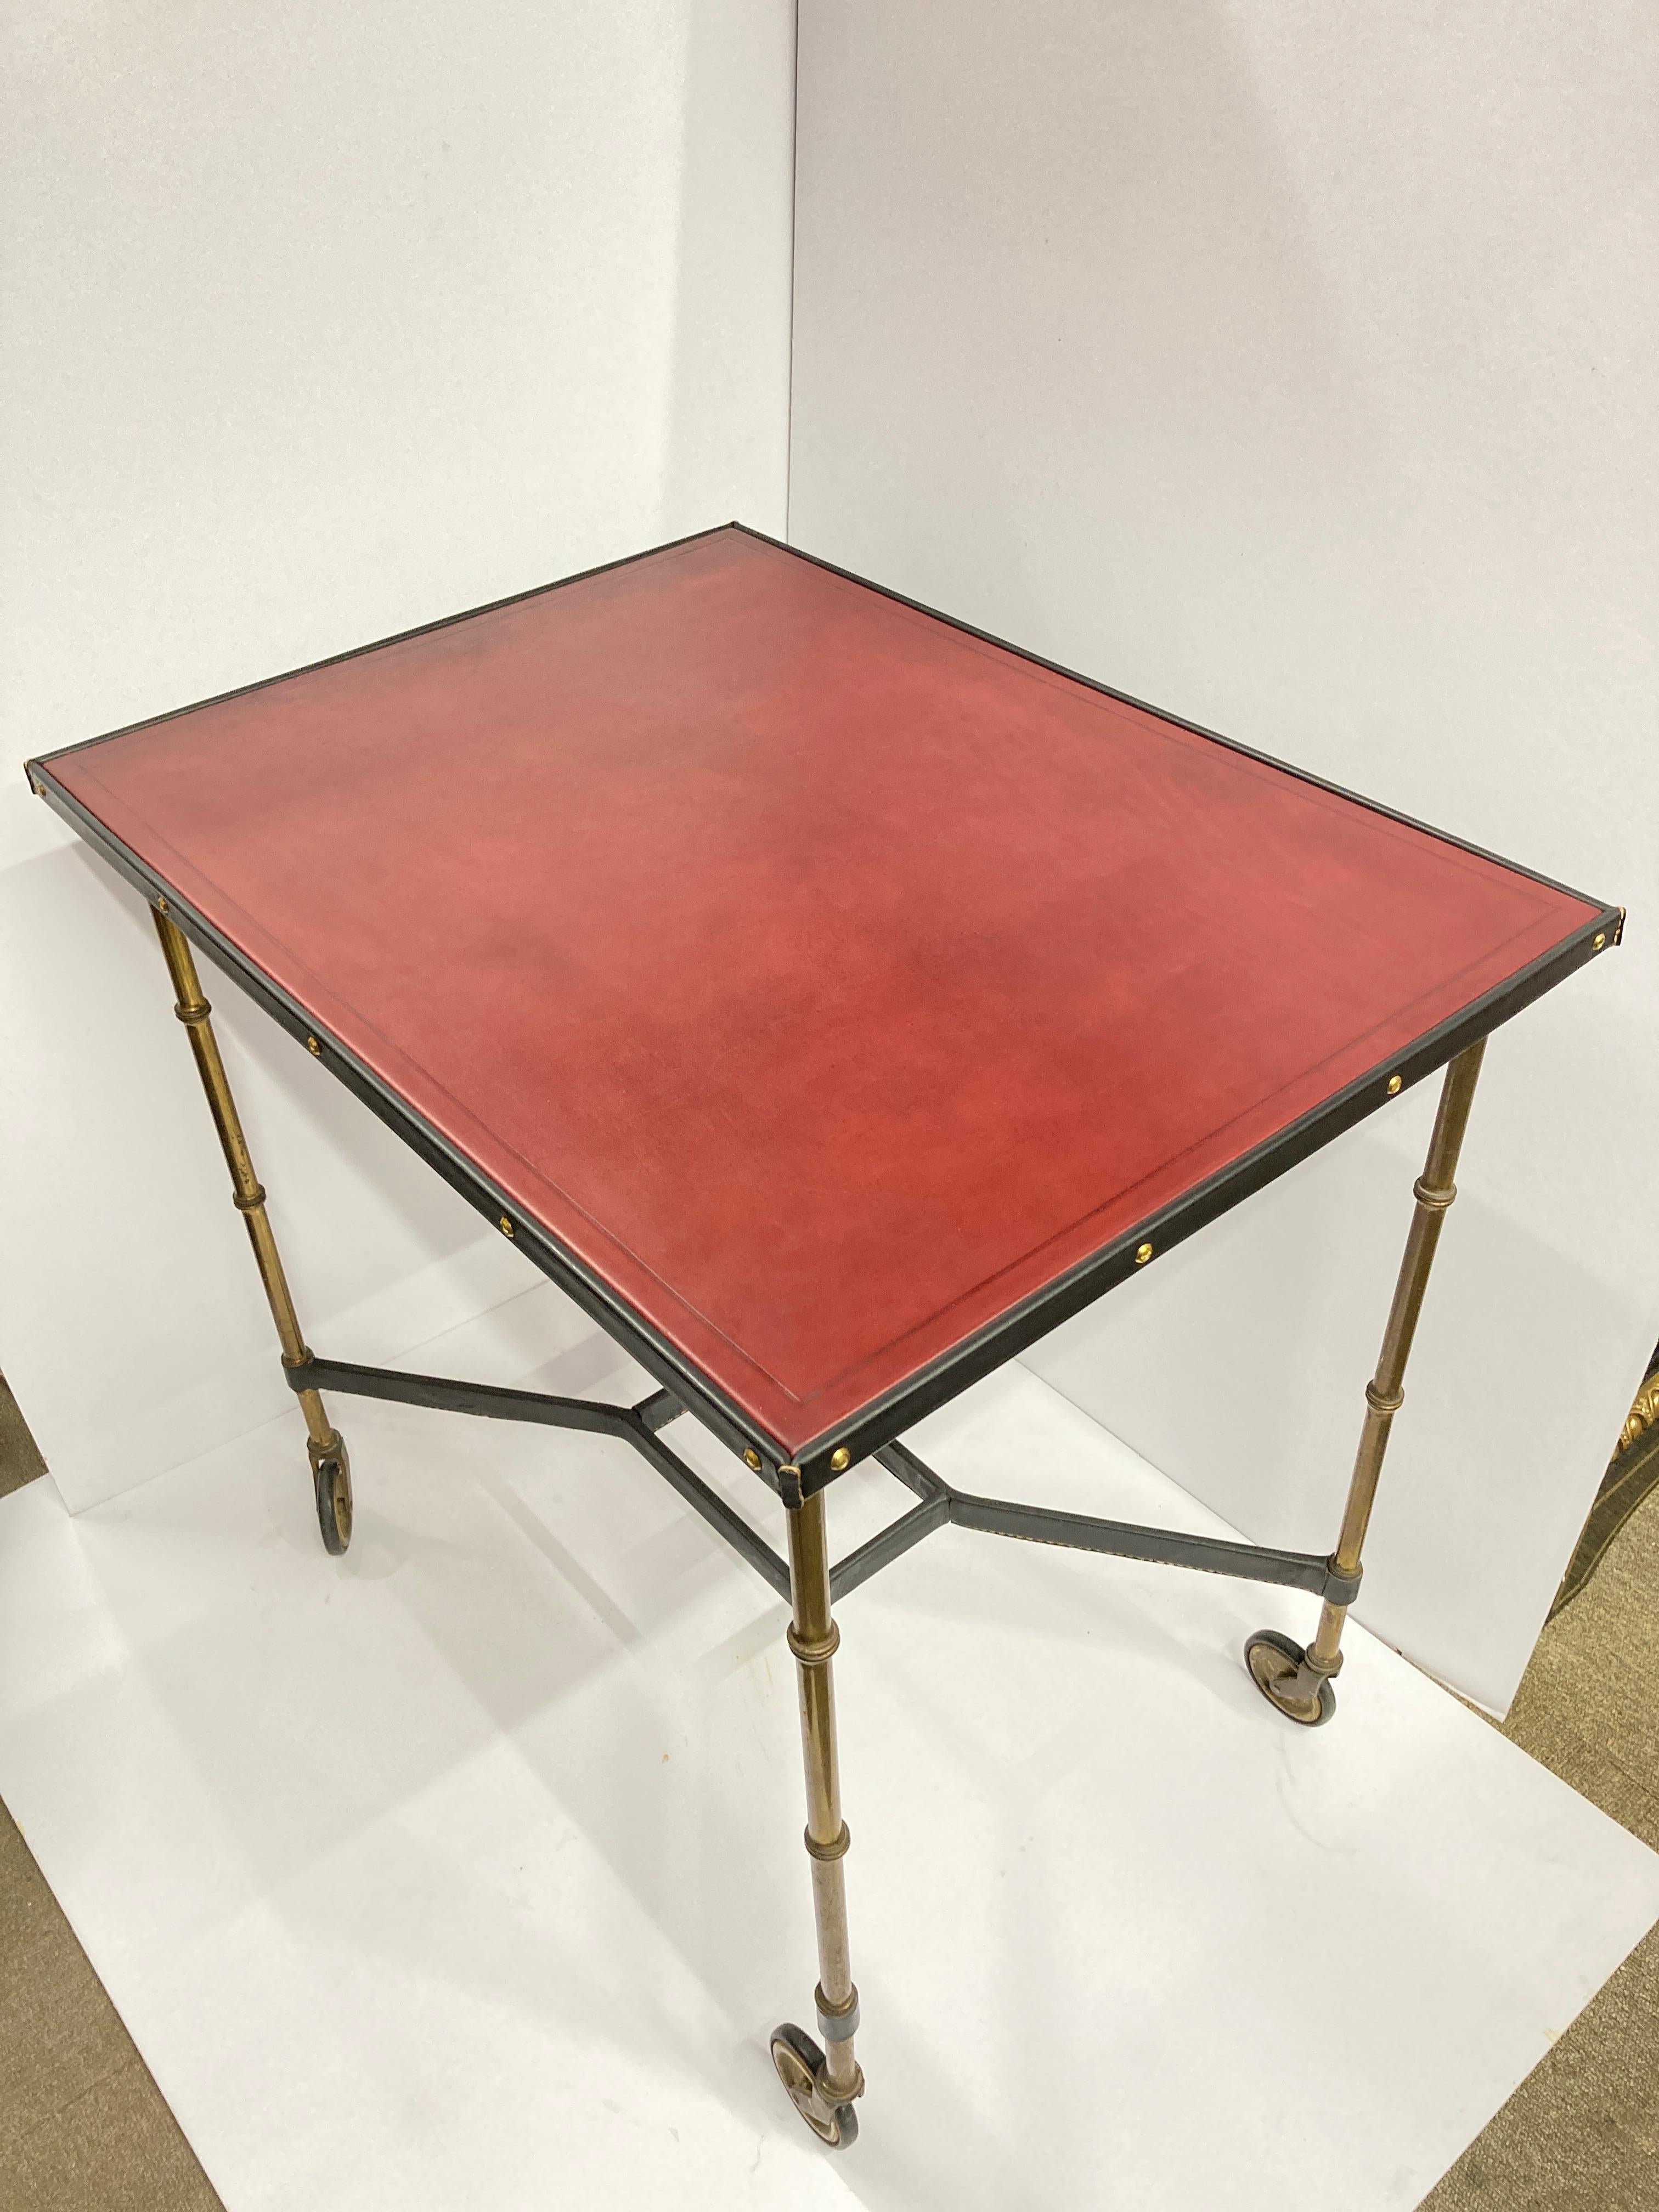 Großer Tisch auf Rad 
Genähtes Leder, schwarz und burgunderrot 
Messingfüße wie Bambus
Möglichkeit, ein Glas auf dem unteren Teil hinzuzufügen 